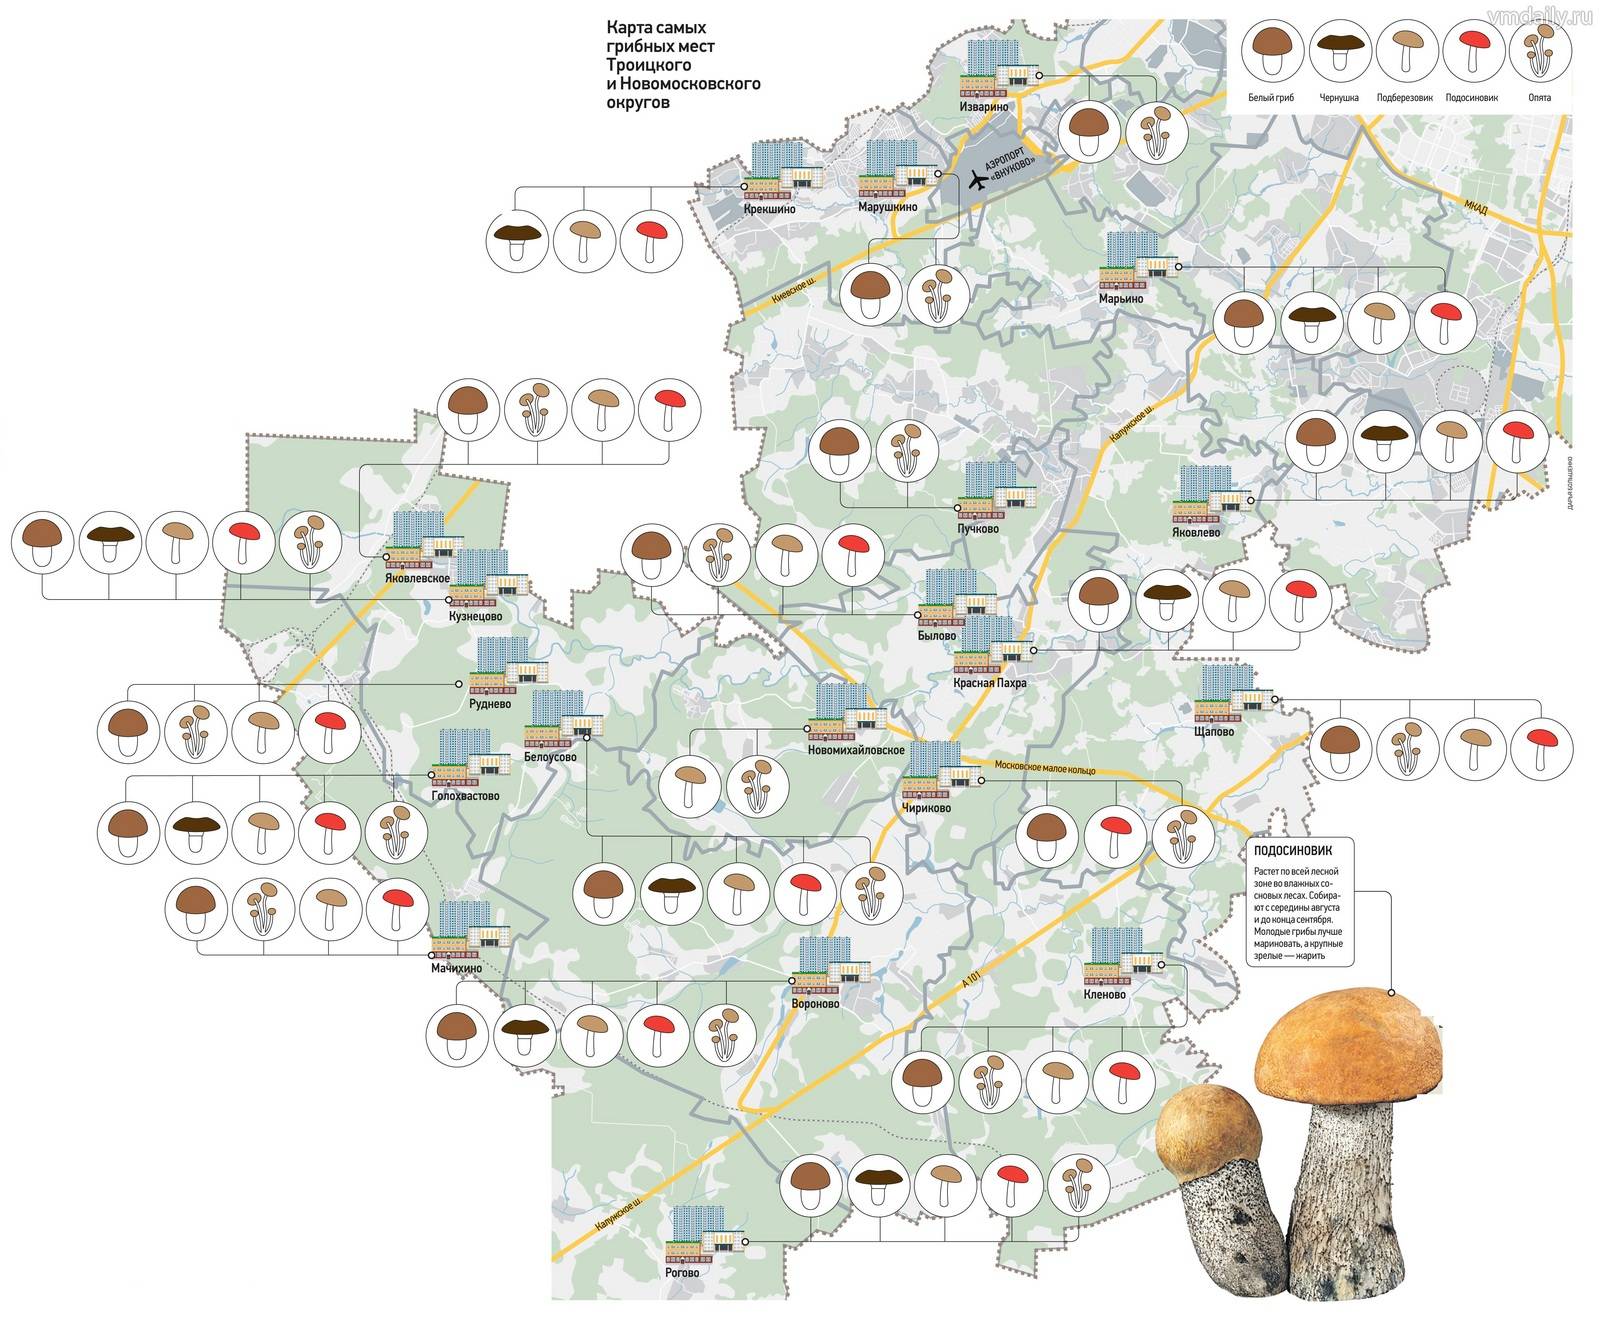 Где собирать грибы: полезная информация и рекомендации опытных грибников о быстром поиске, правильном сборе и хранении грибов